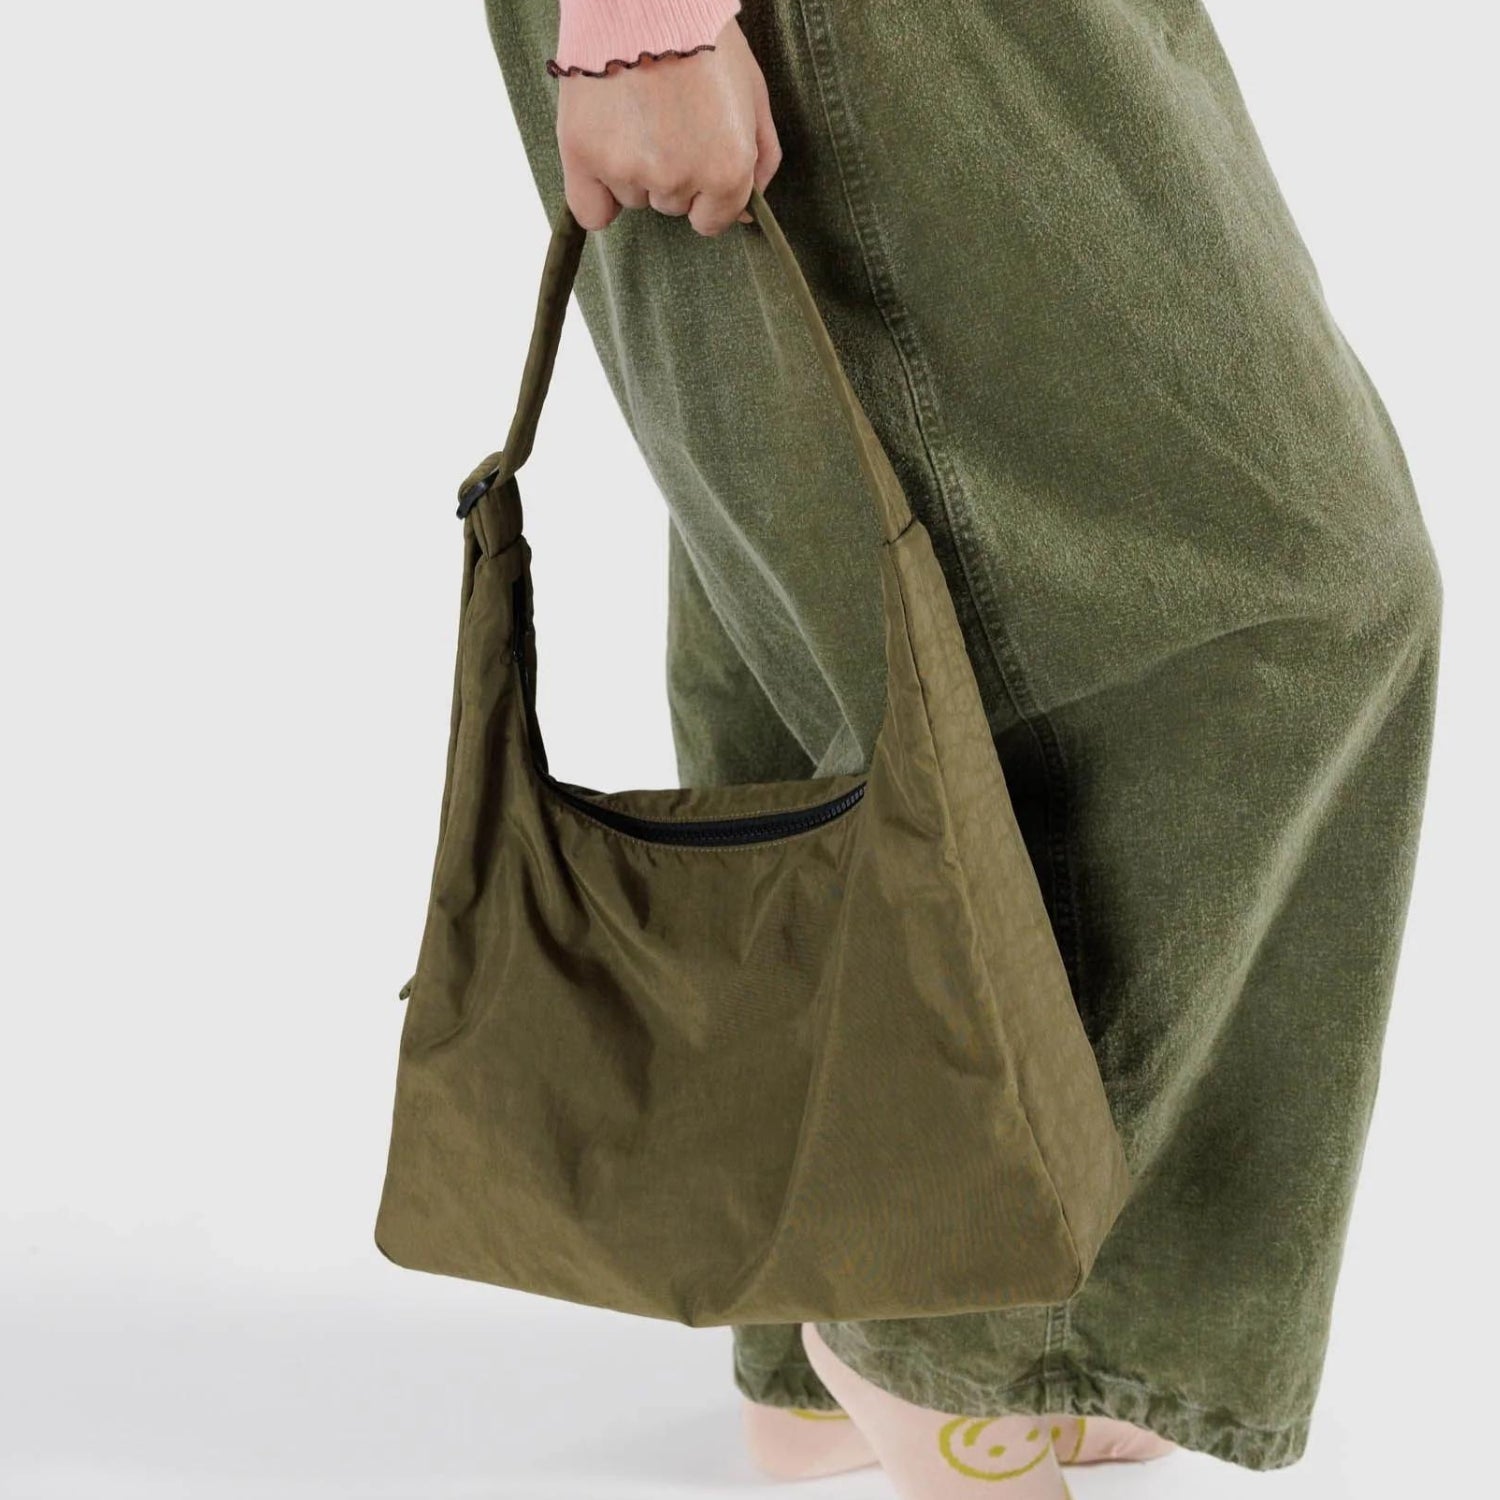 Baggu Nylon Shoulder Bag in Seaweed